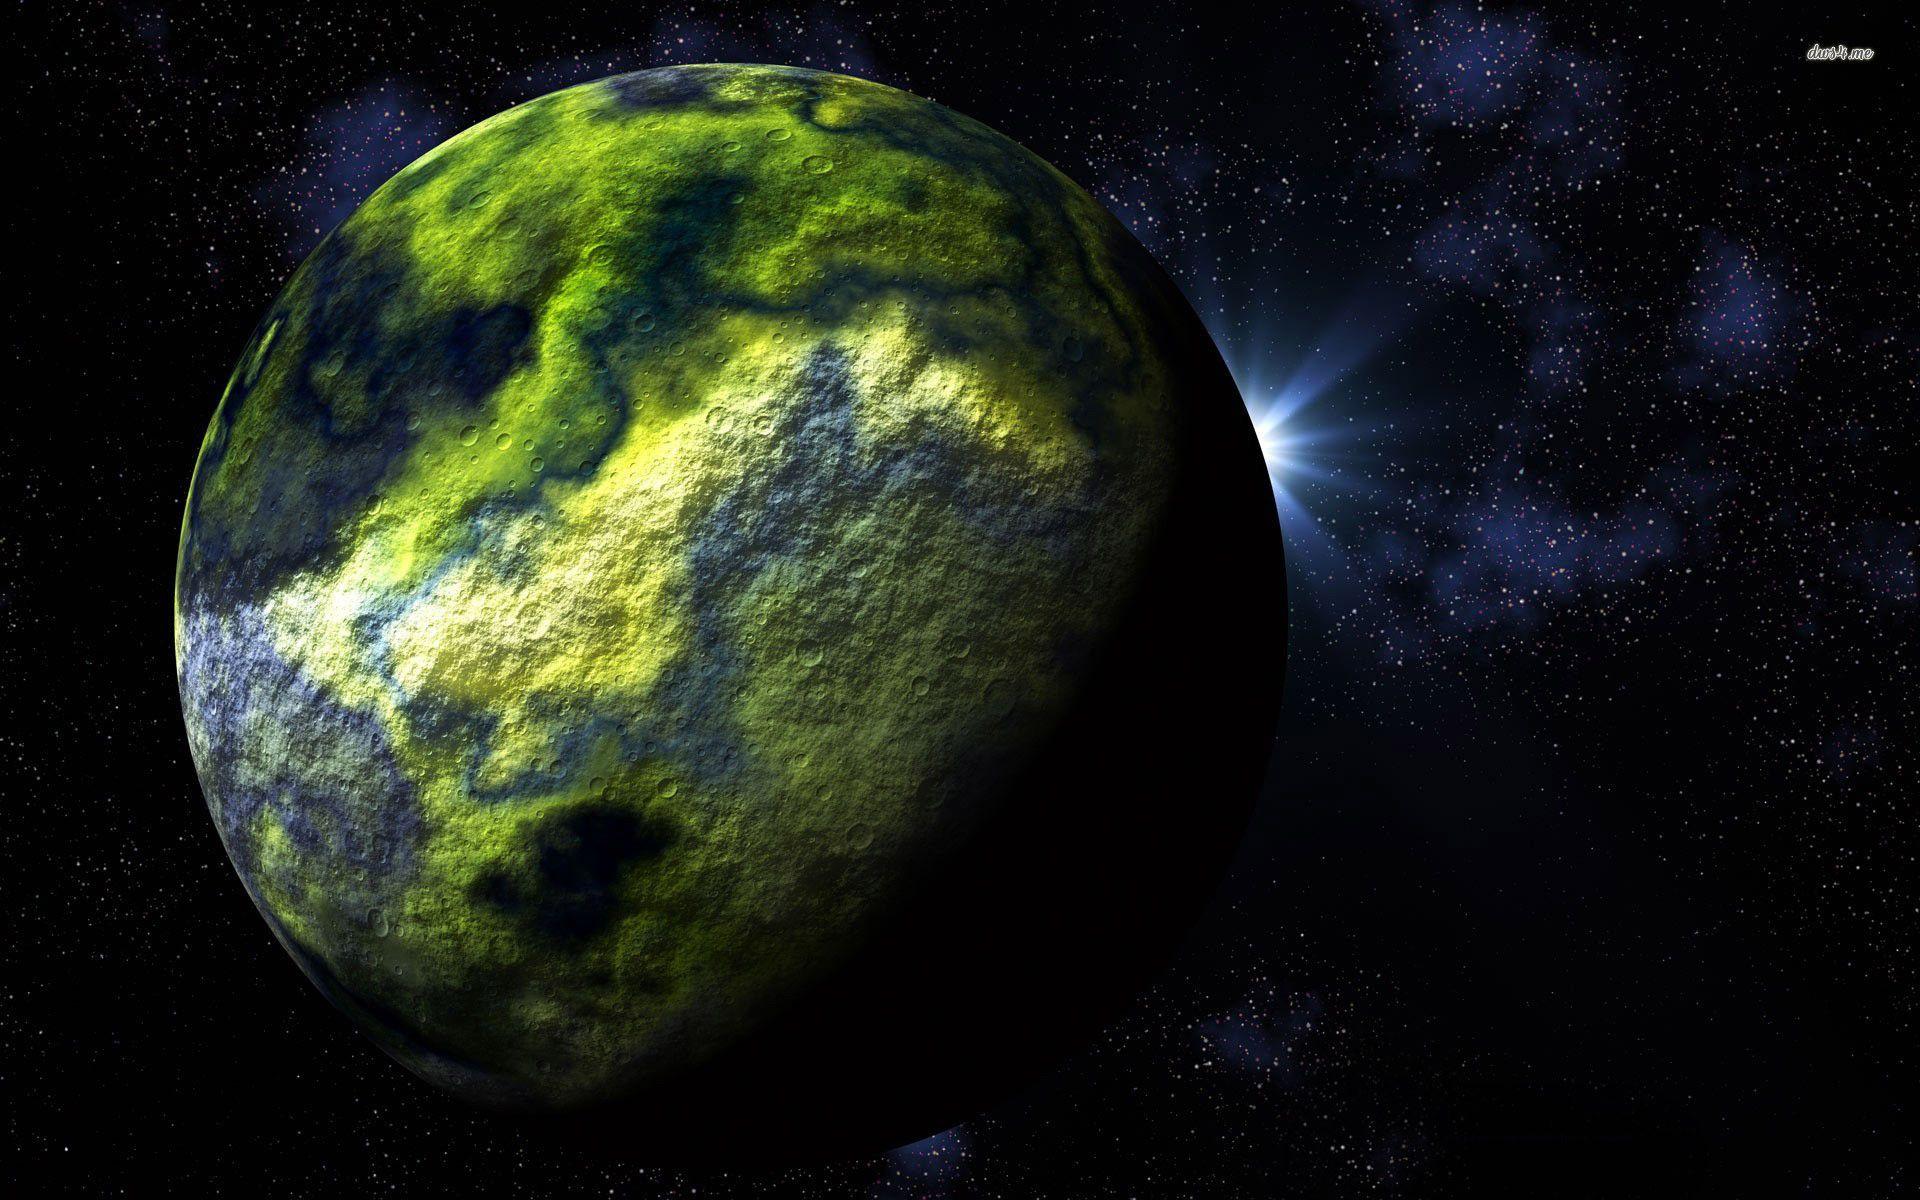 أي كوكب هو الكوكب الأخضر؟